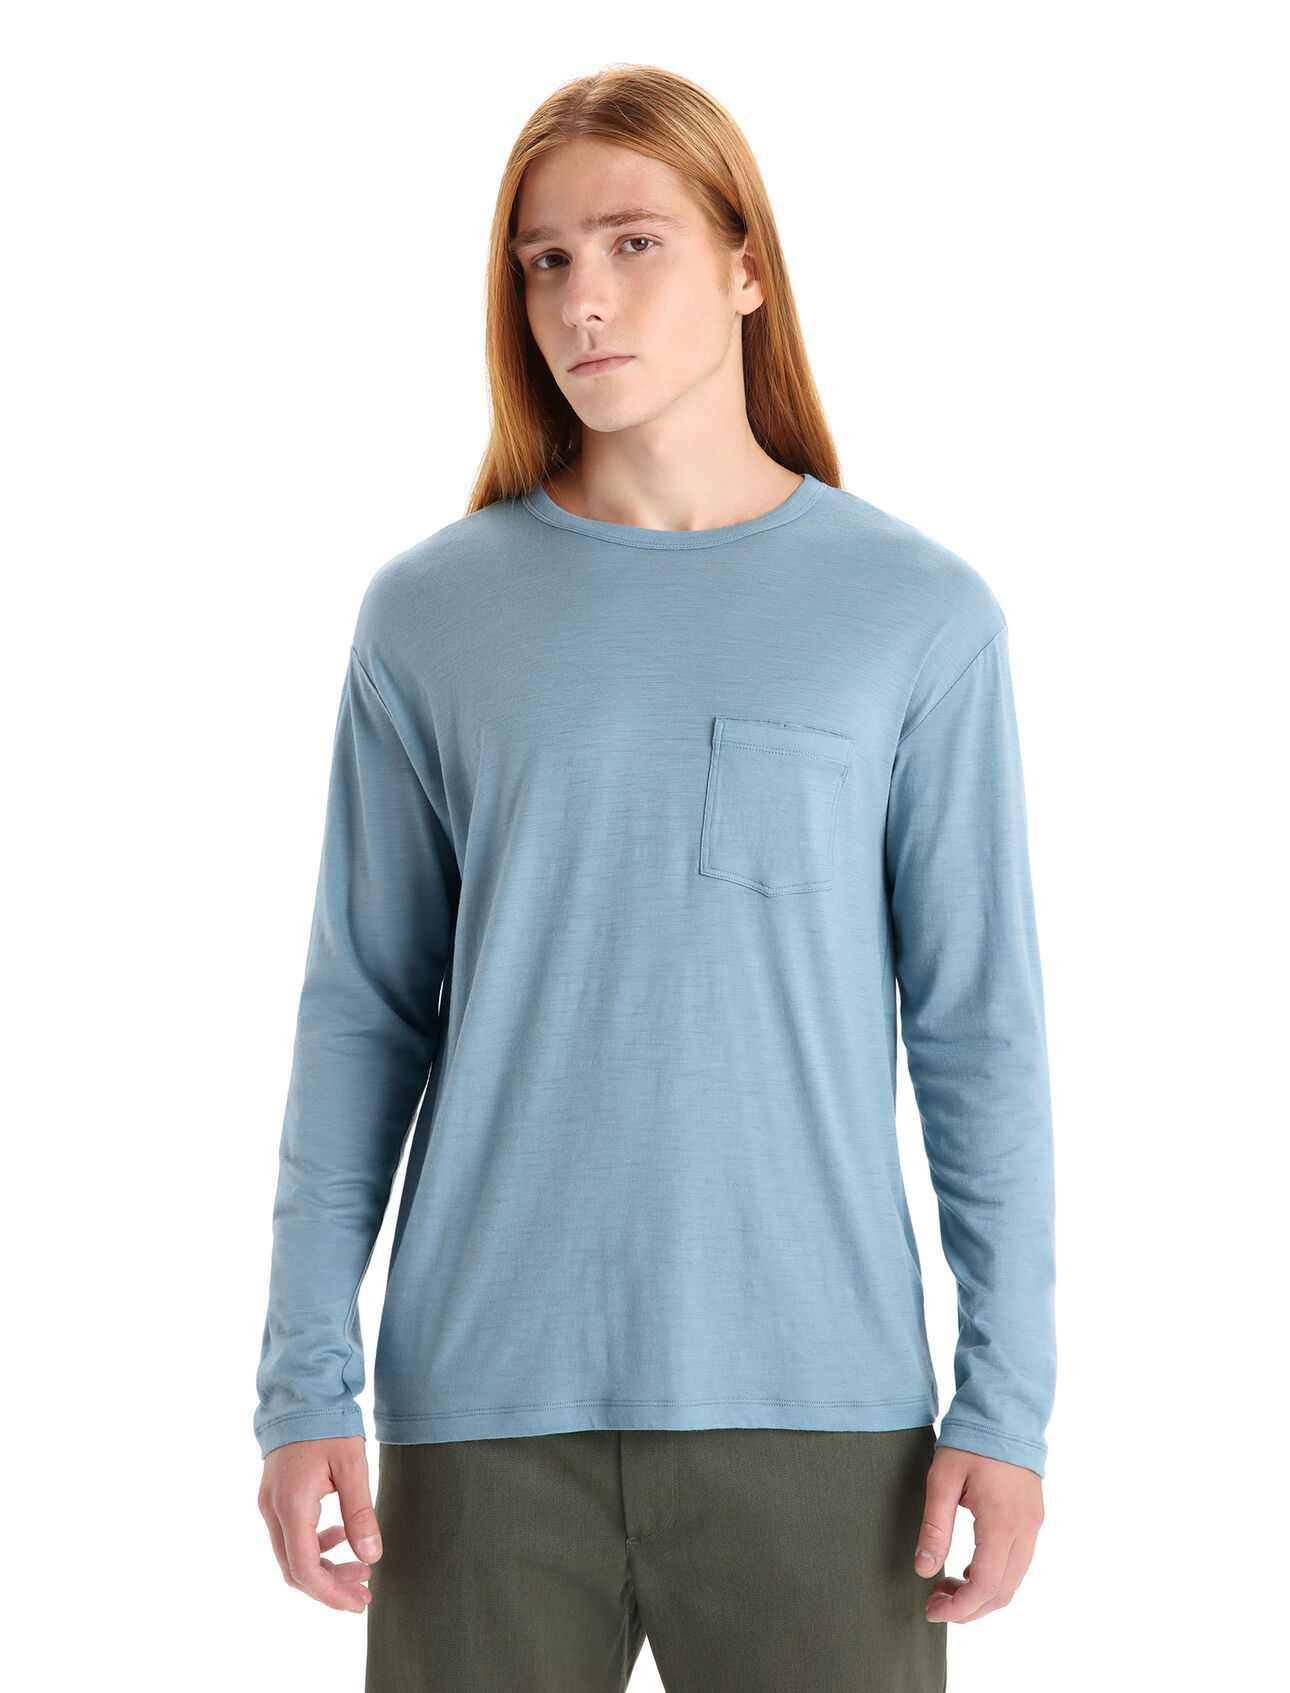 Pánské Merino tričko s kapsou a dlouhým rukávem Granary Tričko s kapsou a dlouhým rukávem Granary je klasický kousek ve volném střihu, který je vyroben z měkké a prodyšné 100% merino vlny – pro vaše každodenní pohodlí i styl. 